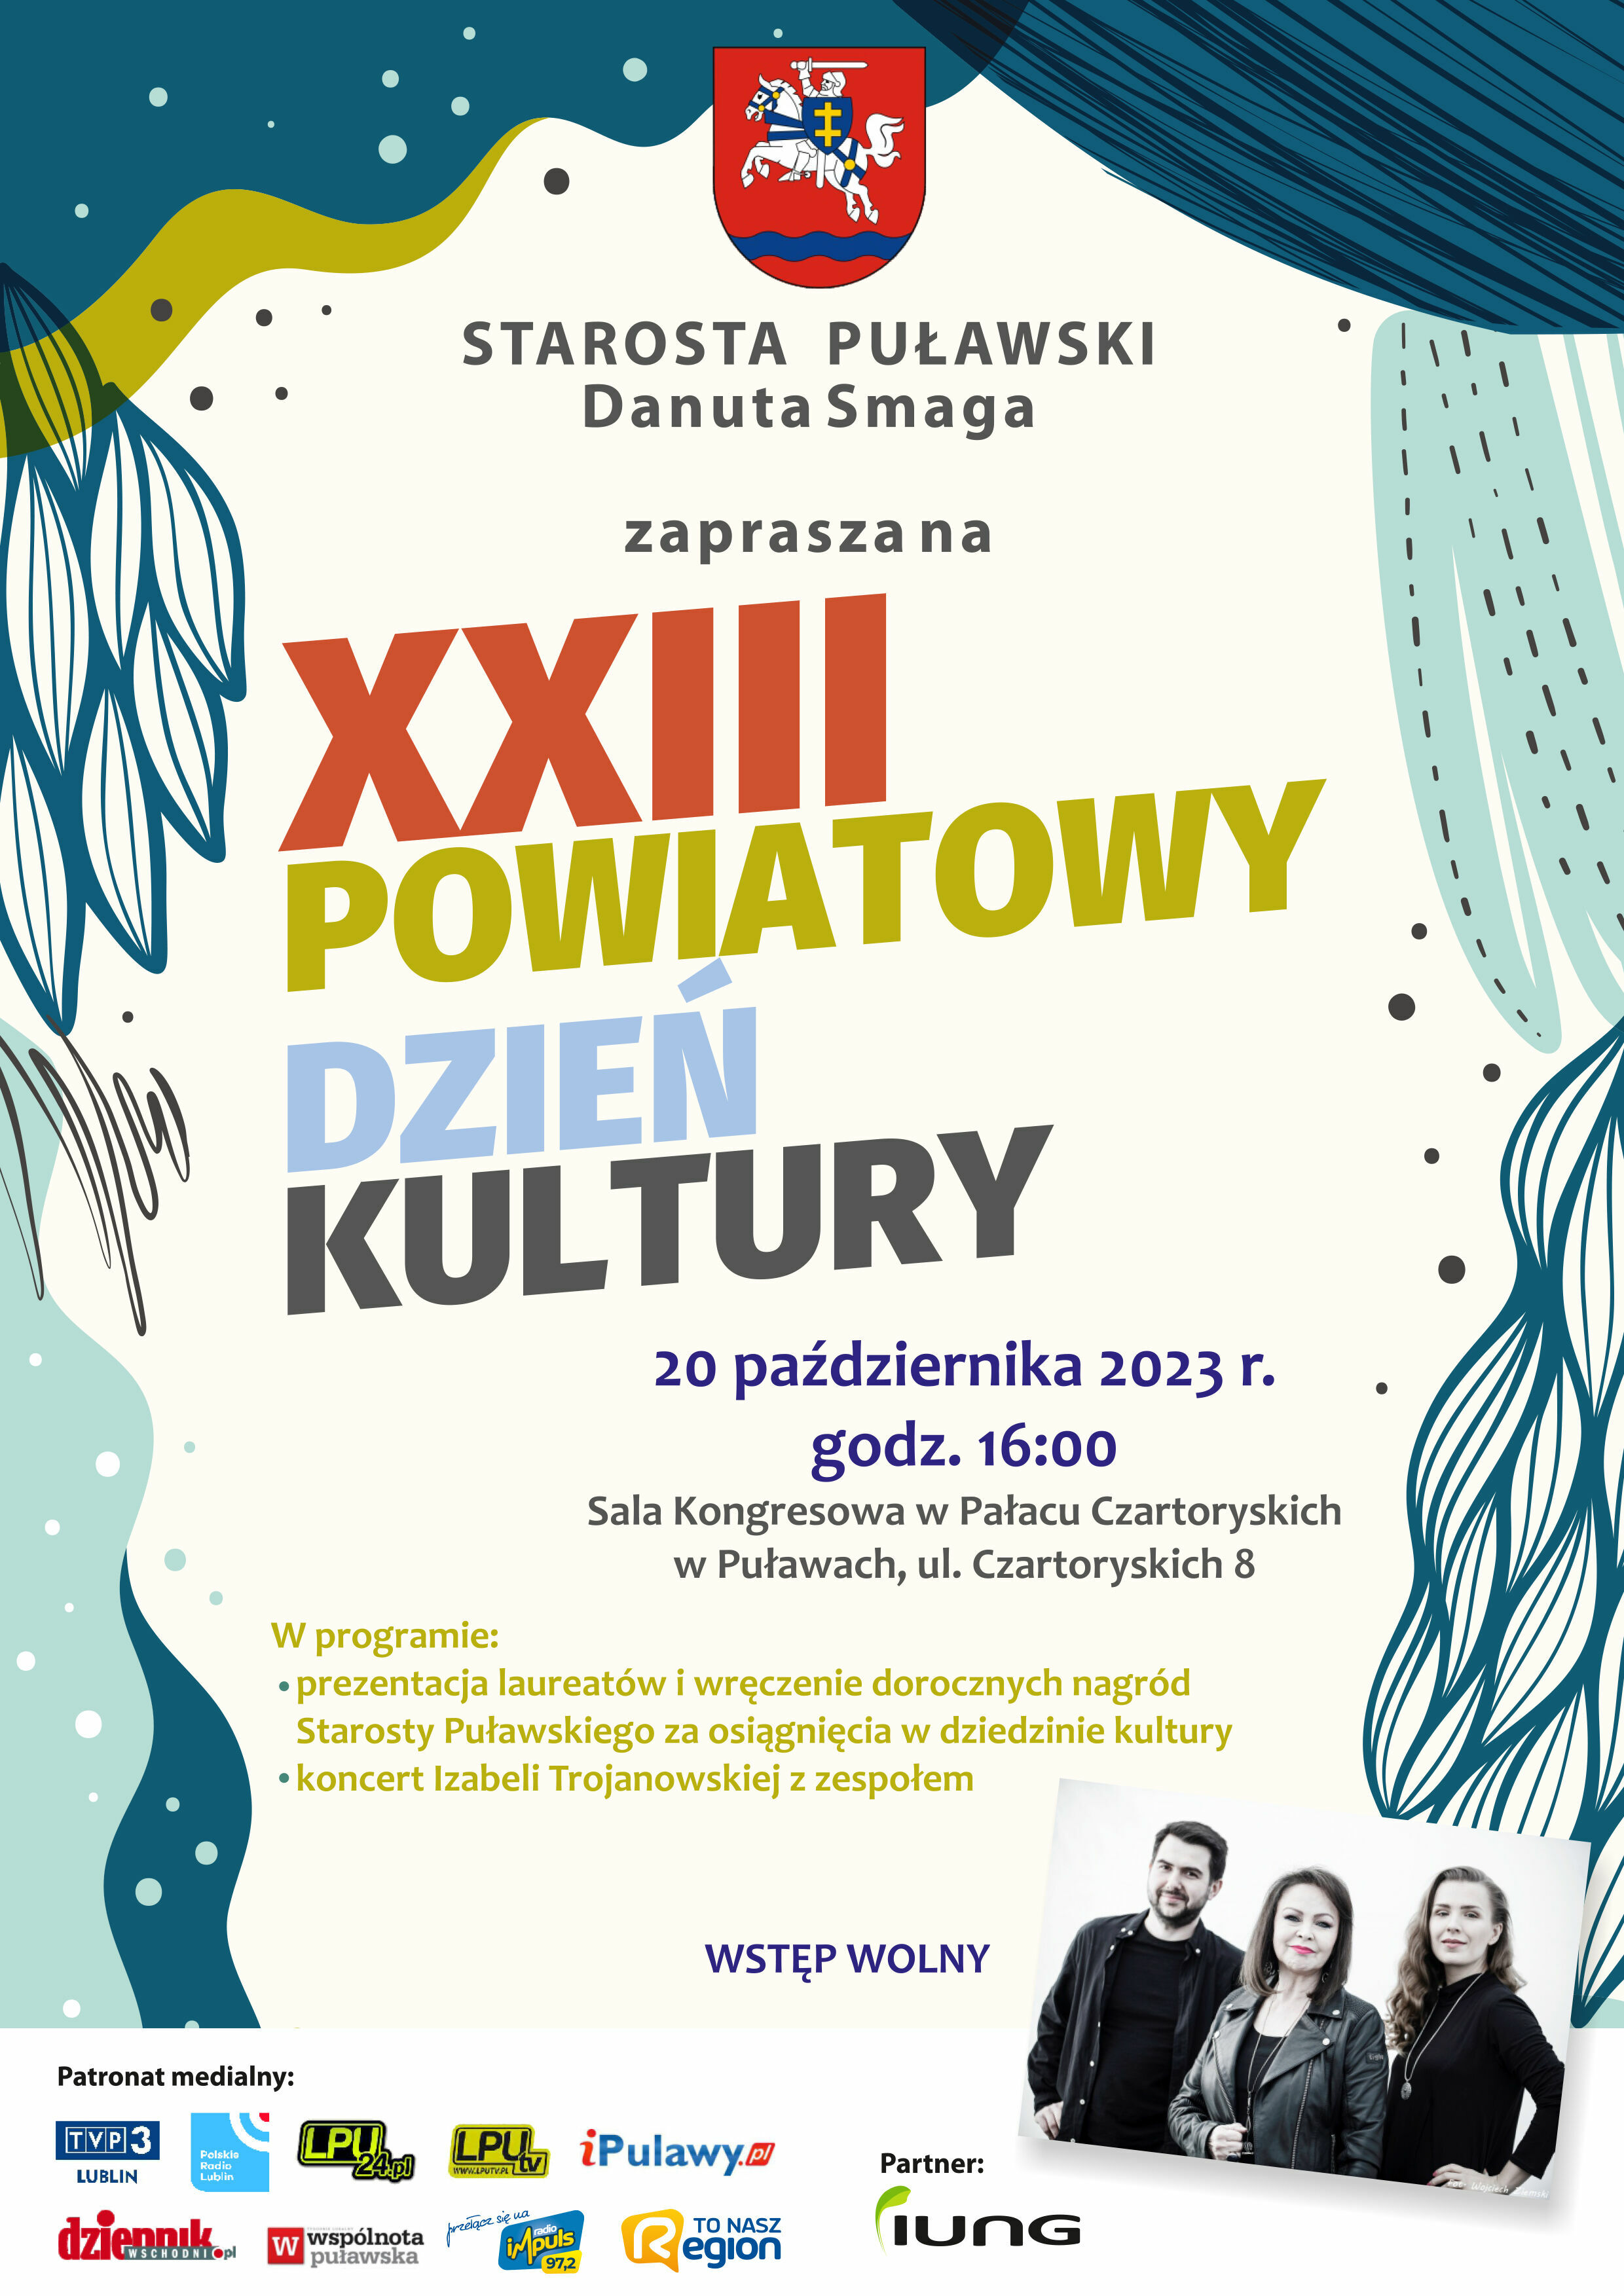 Plakat promujący XX Powiatowy Dzień Kultury w Puławach z informacjami o wydarzeniu, godzinie, miejscu, programie, patronatach i partnerach na tle graficznym z abstrakcyjnymi wzorami.